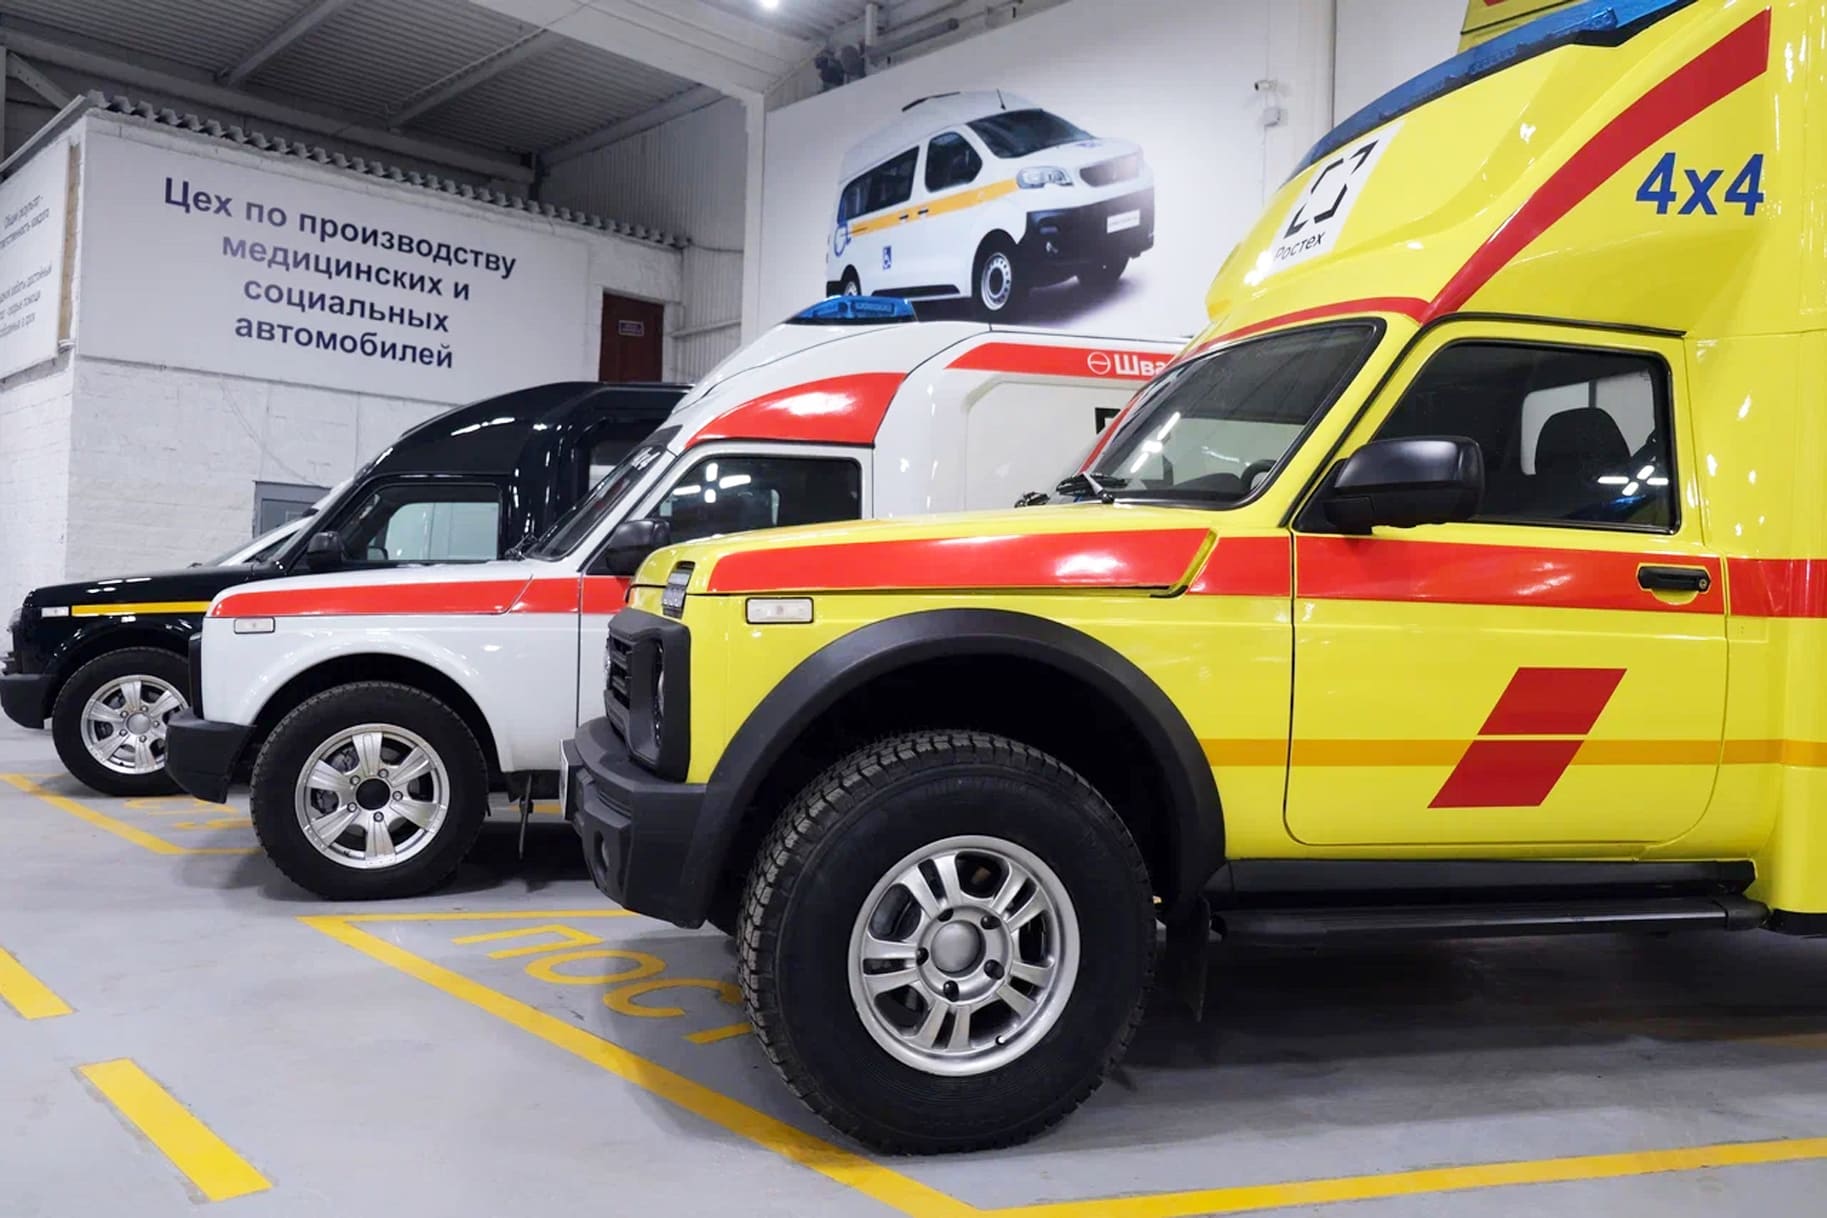 Нижегородские врачи ознакомились с автомобилями скорой помощи «Швабе»